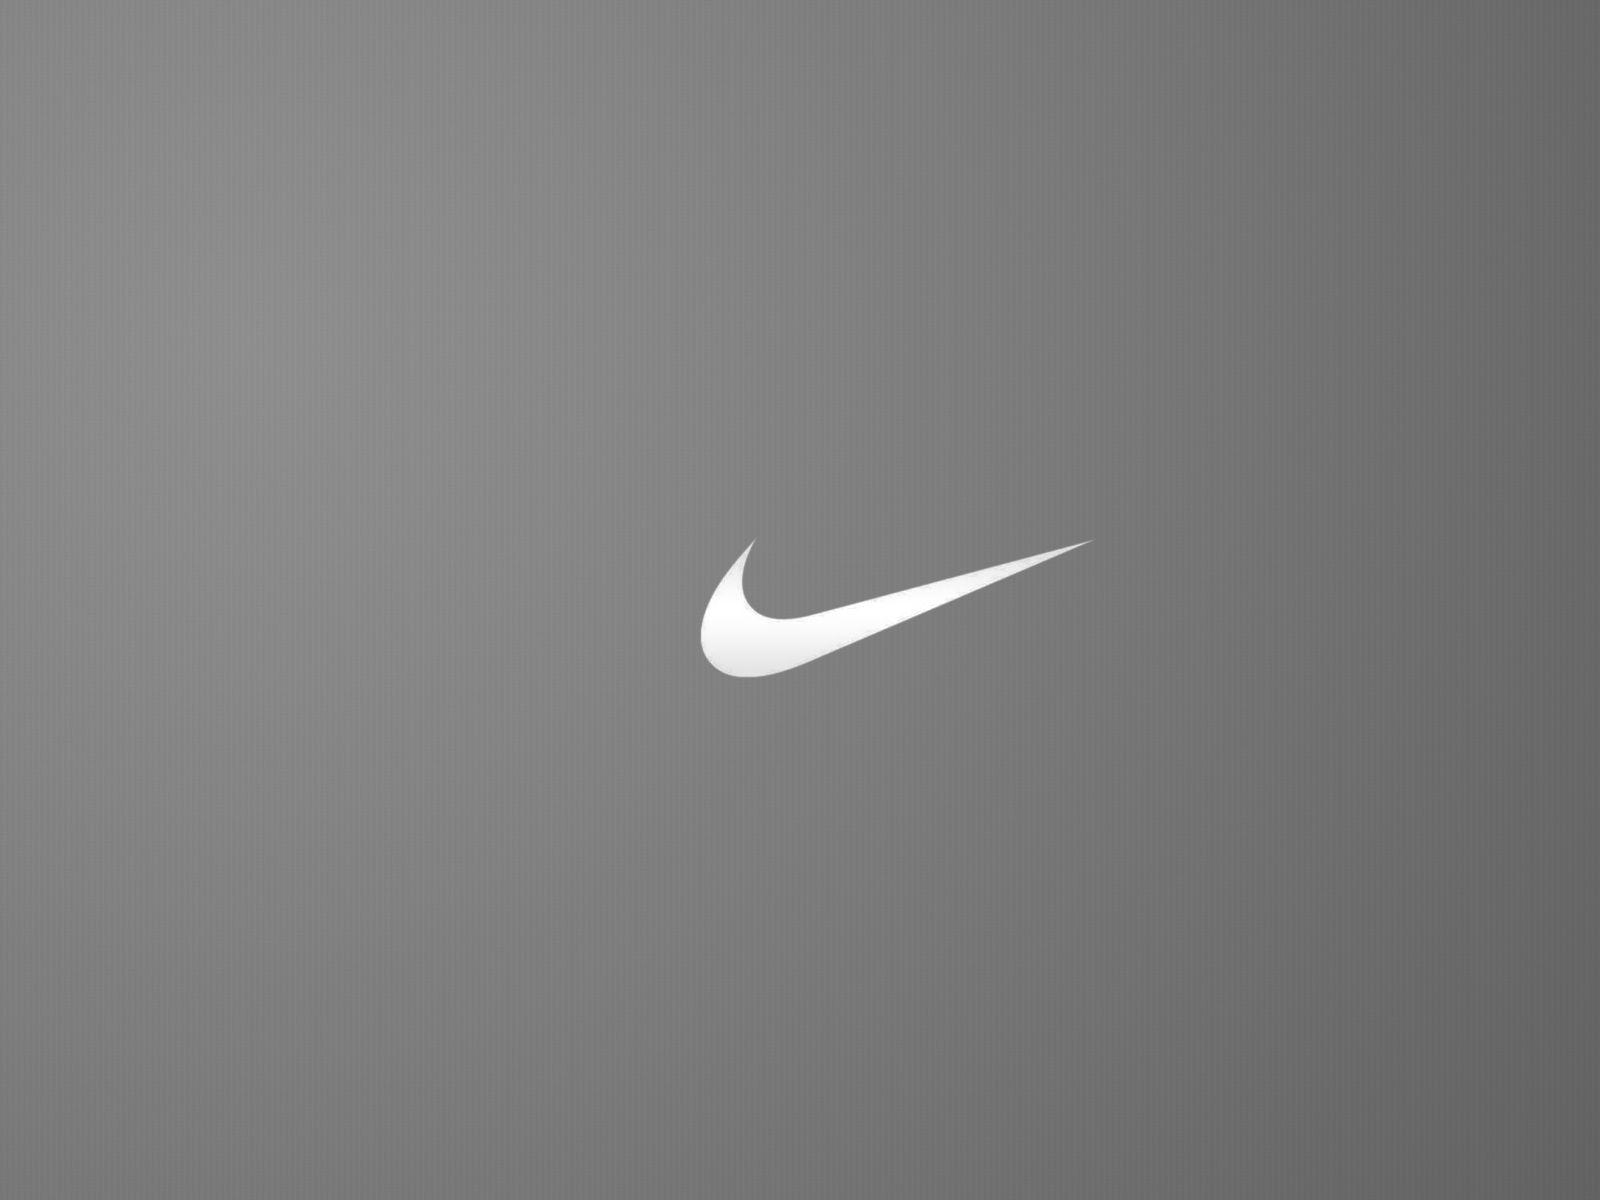 Wallpaper For > Nike Logo Wallpaper For iPhone